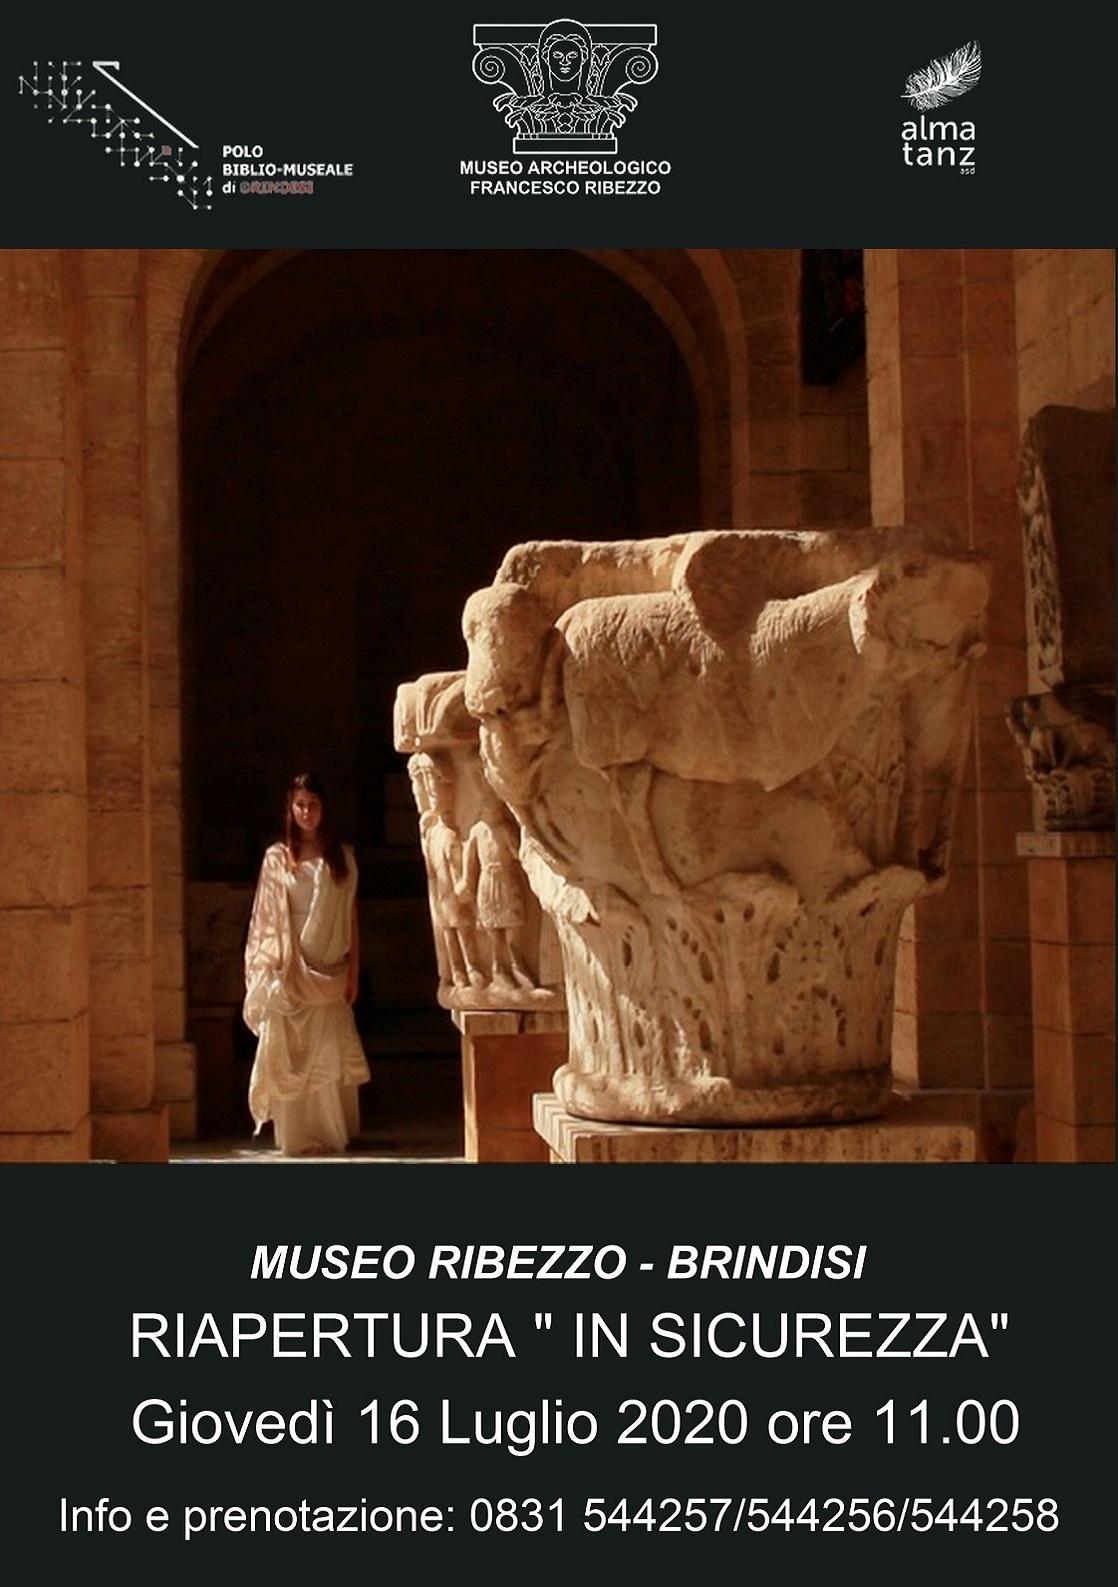 Museo “F.Ribezzo” Brindisi. Riapertura “in sicurezza”